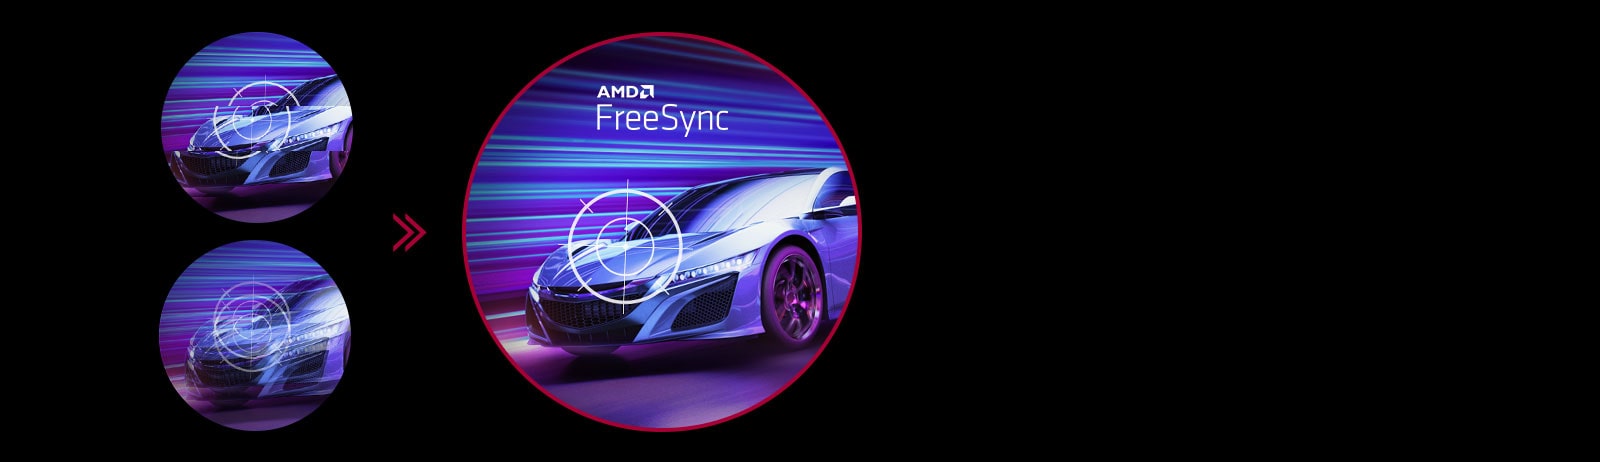 טכנולוגיית AMD FreeSync™‎ מאפשרת לשחקנים ליהנות מתנועה שוטפת ובלתי מופרעת במשחקים ברזולוציה גבוהה המתנהלים בקצב מהיר. מפחיתה באופן כמעט אבסולוטי את תופעות הגמגום וקריעת המסך.